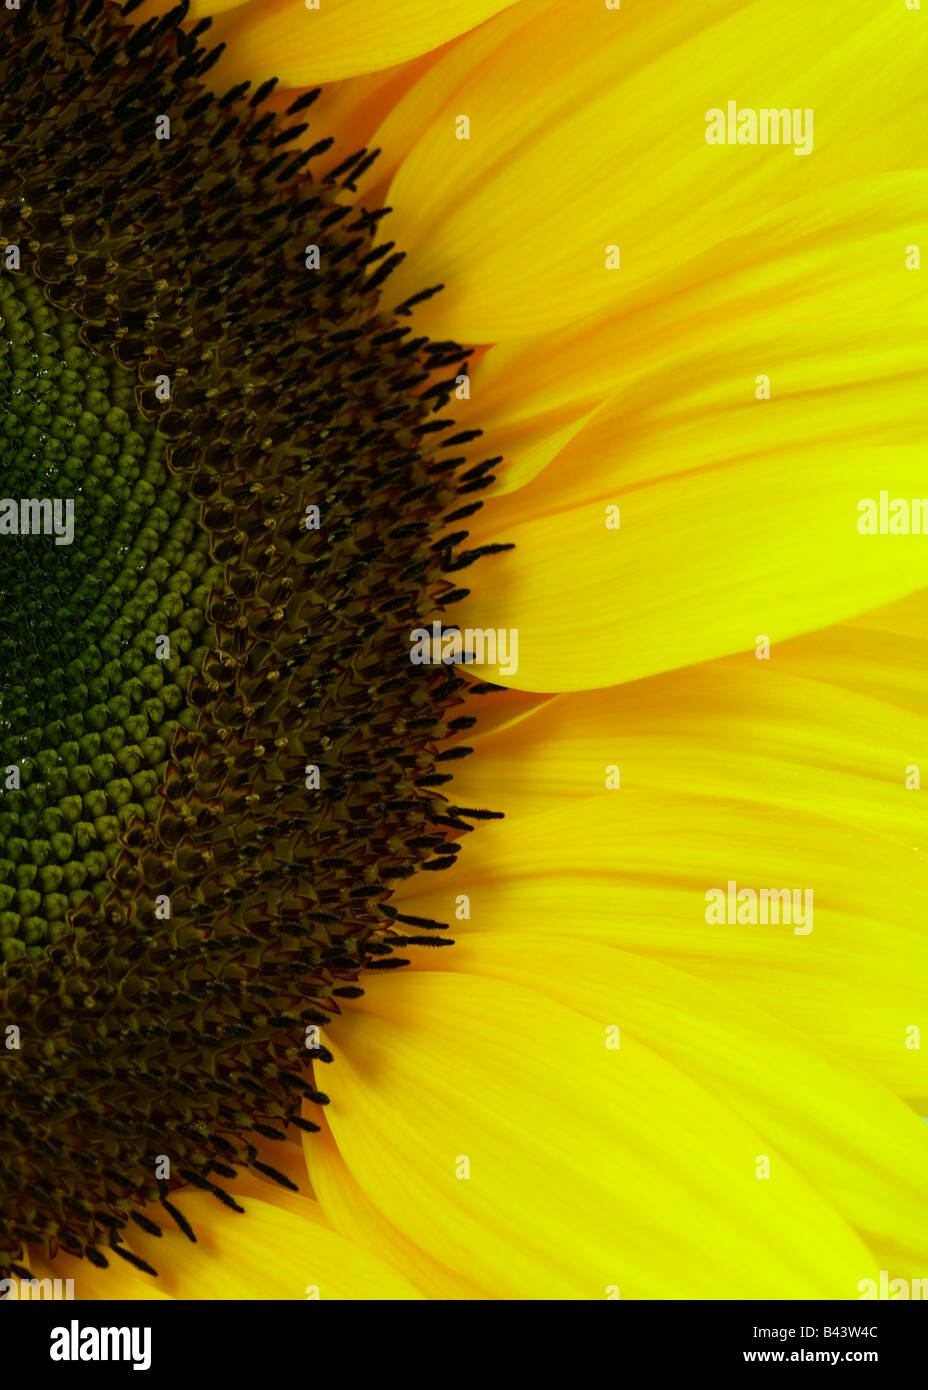 Yellow Helianthus Sunflower Stock Photo